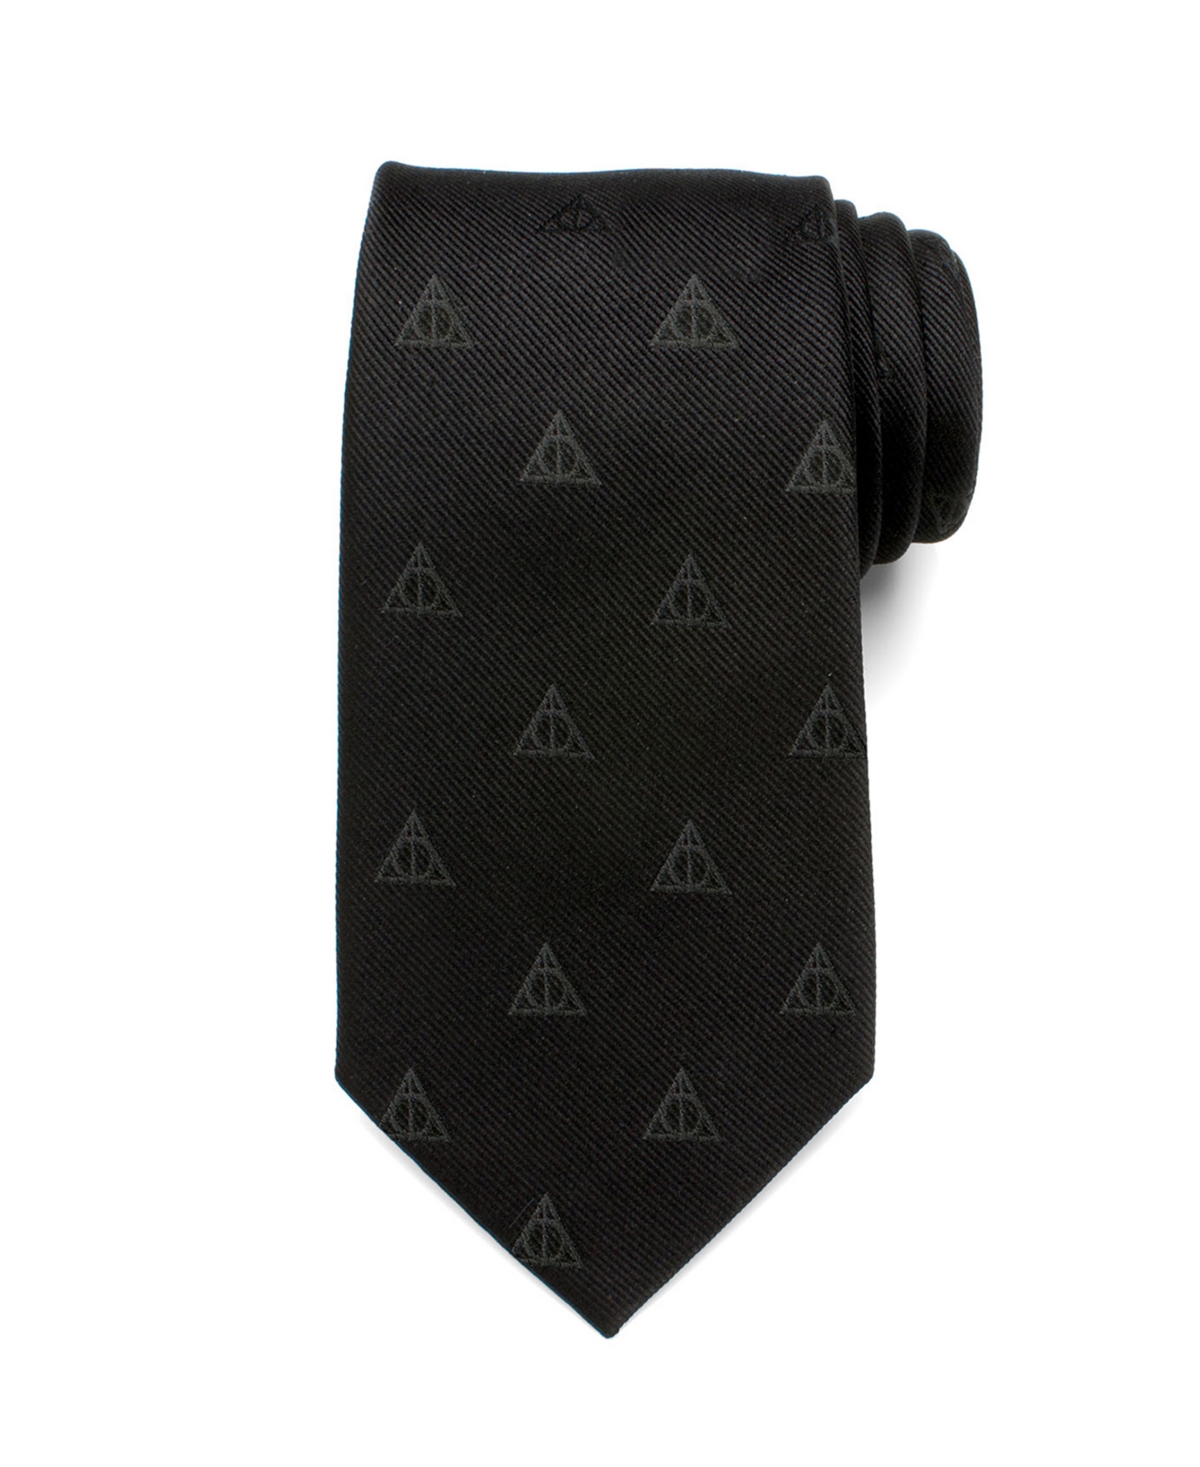 Deathly Hallows Men's Tie - Black